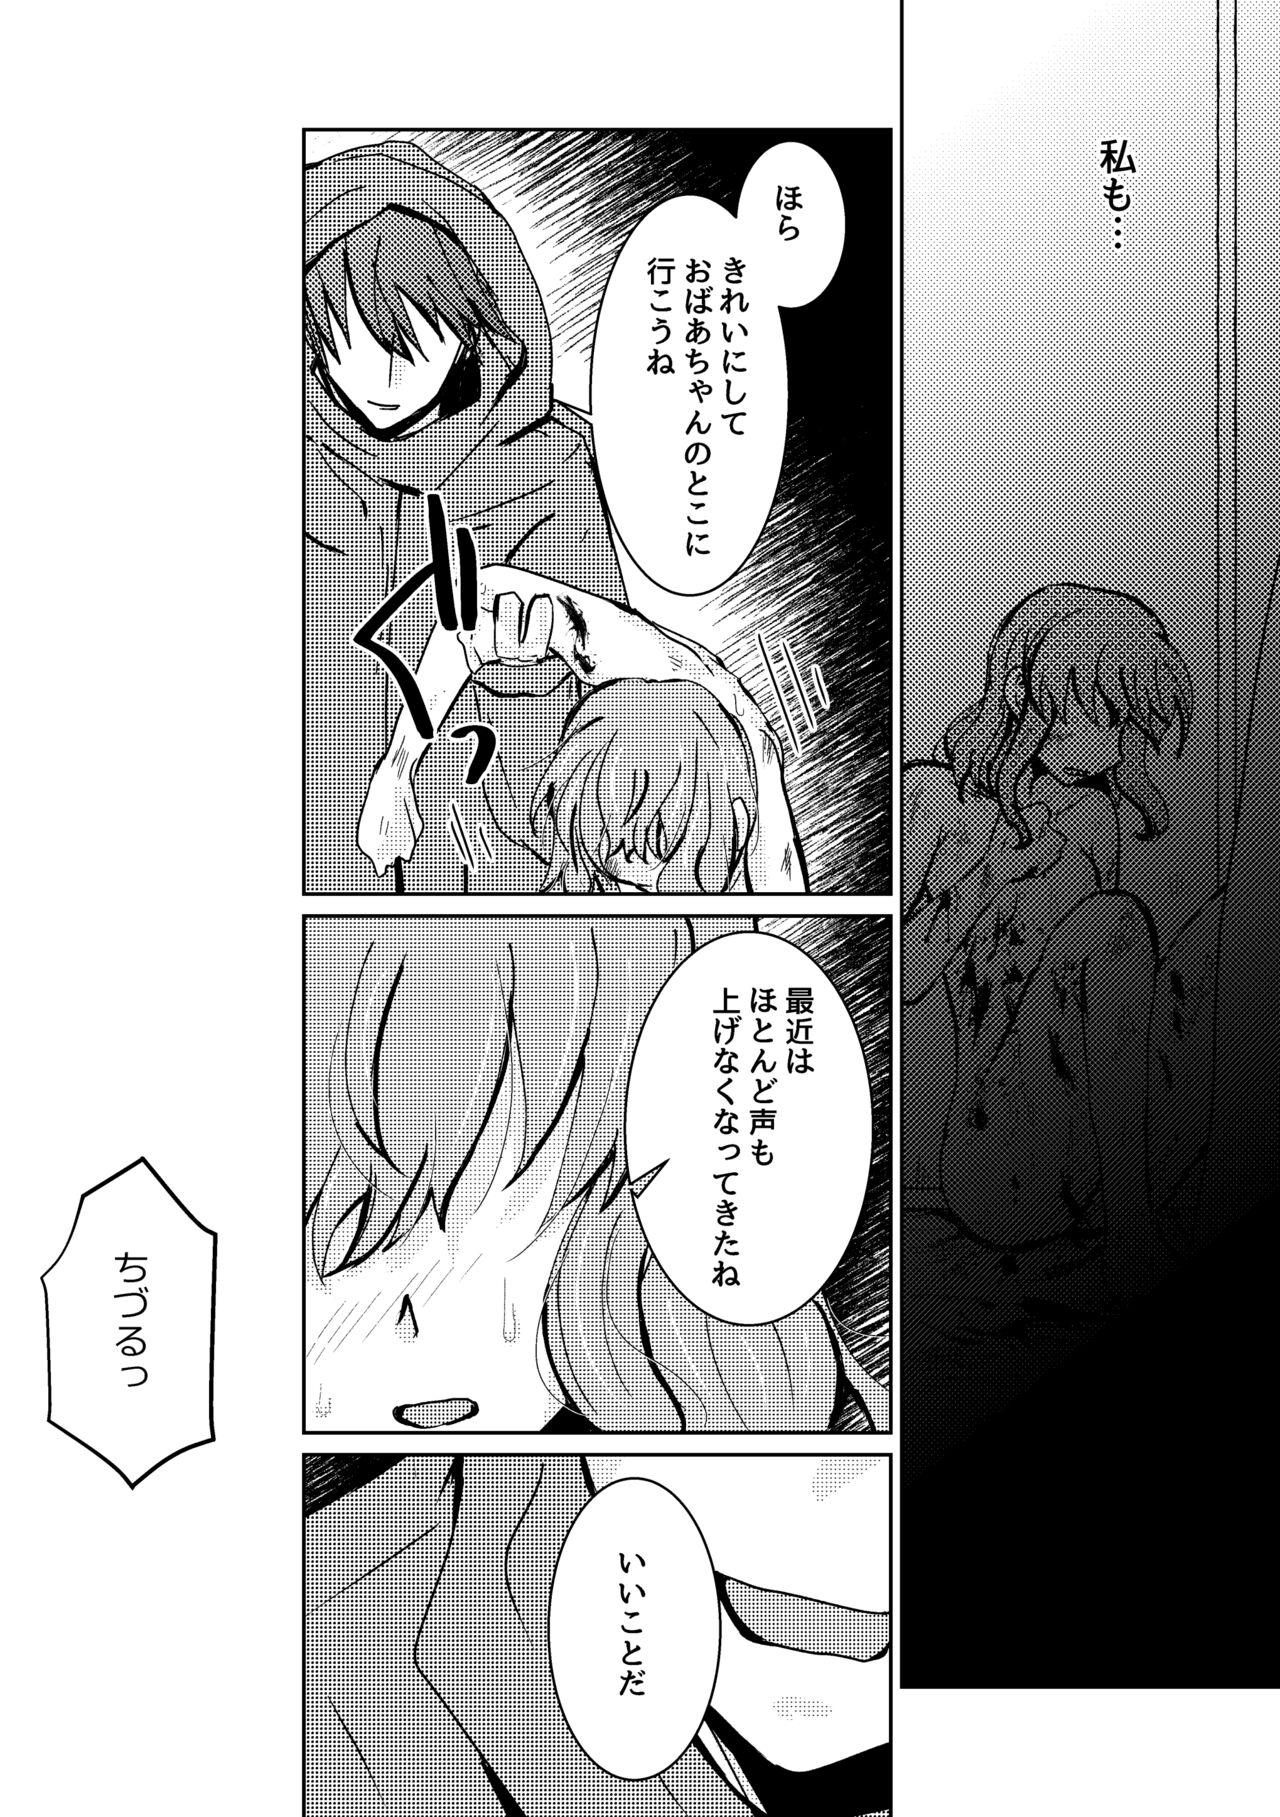 Naija Kareya Yoru no Hanaka Episode 3 Stroking - Page 7